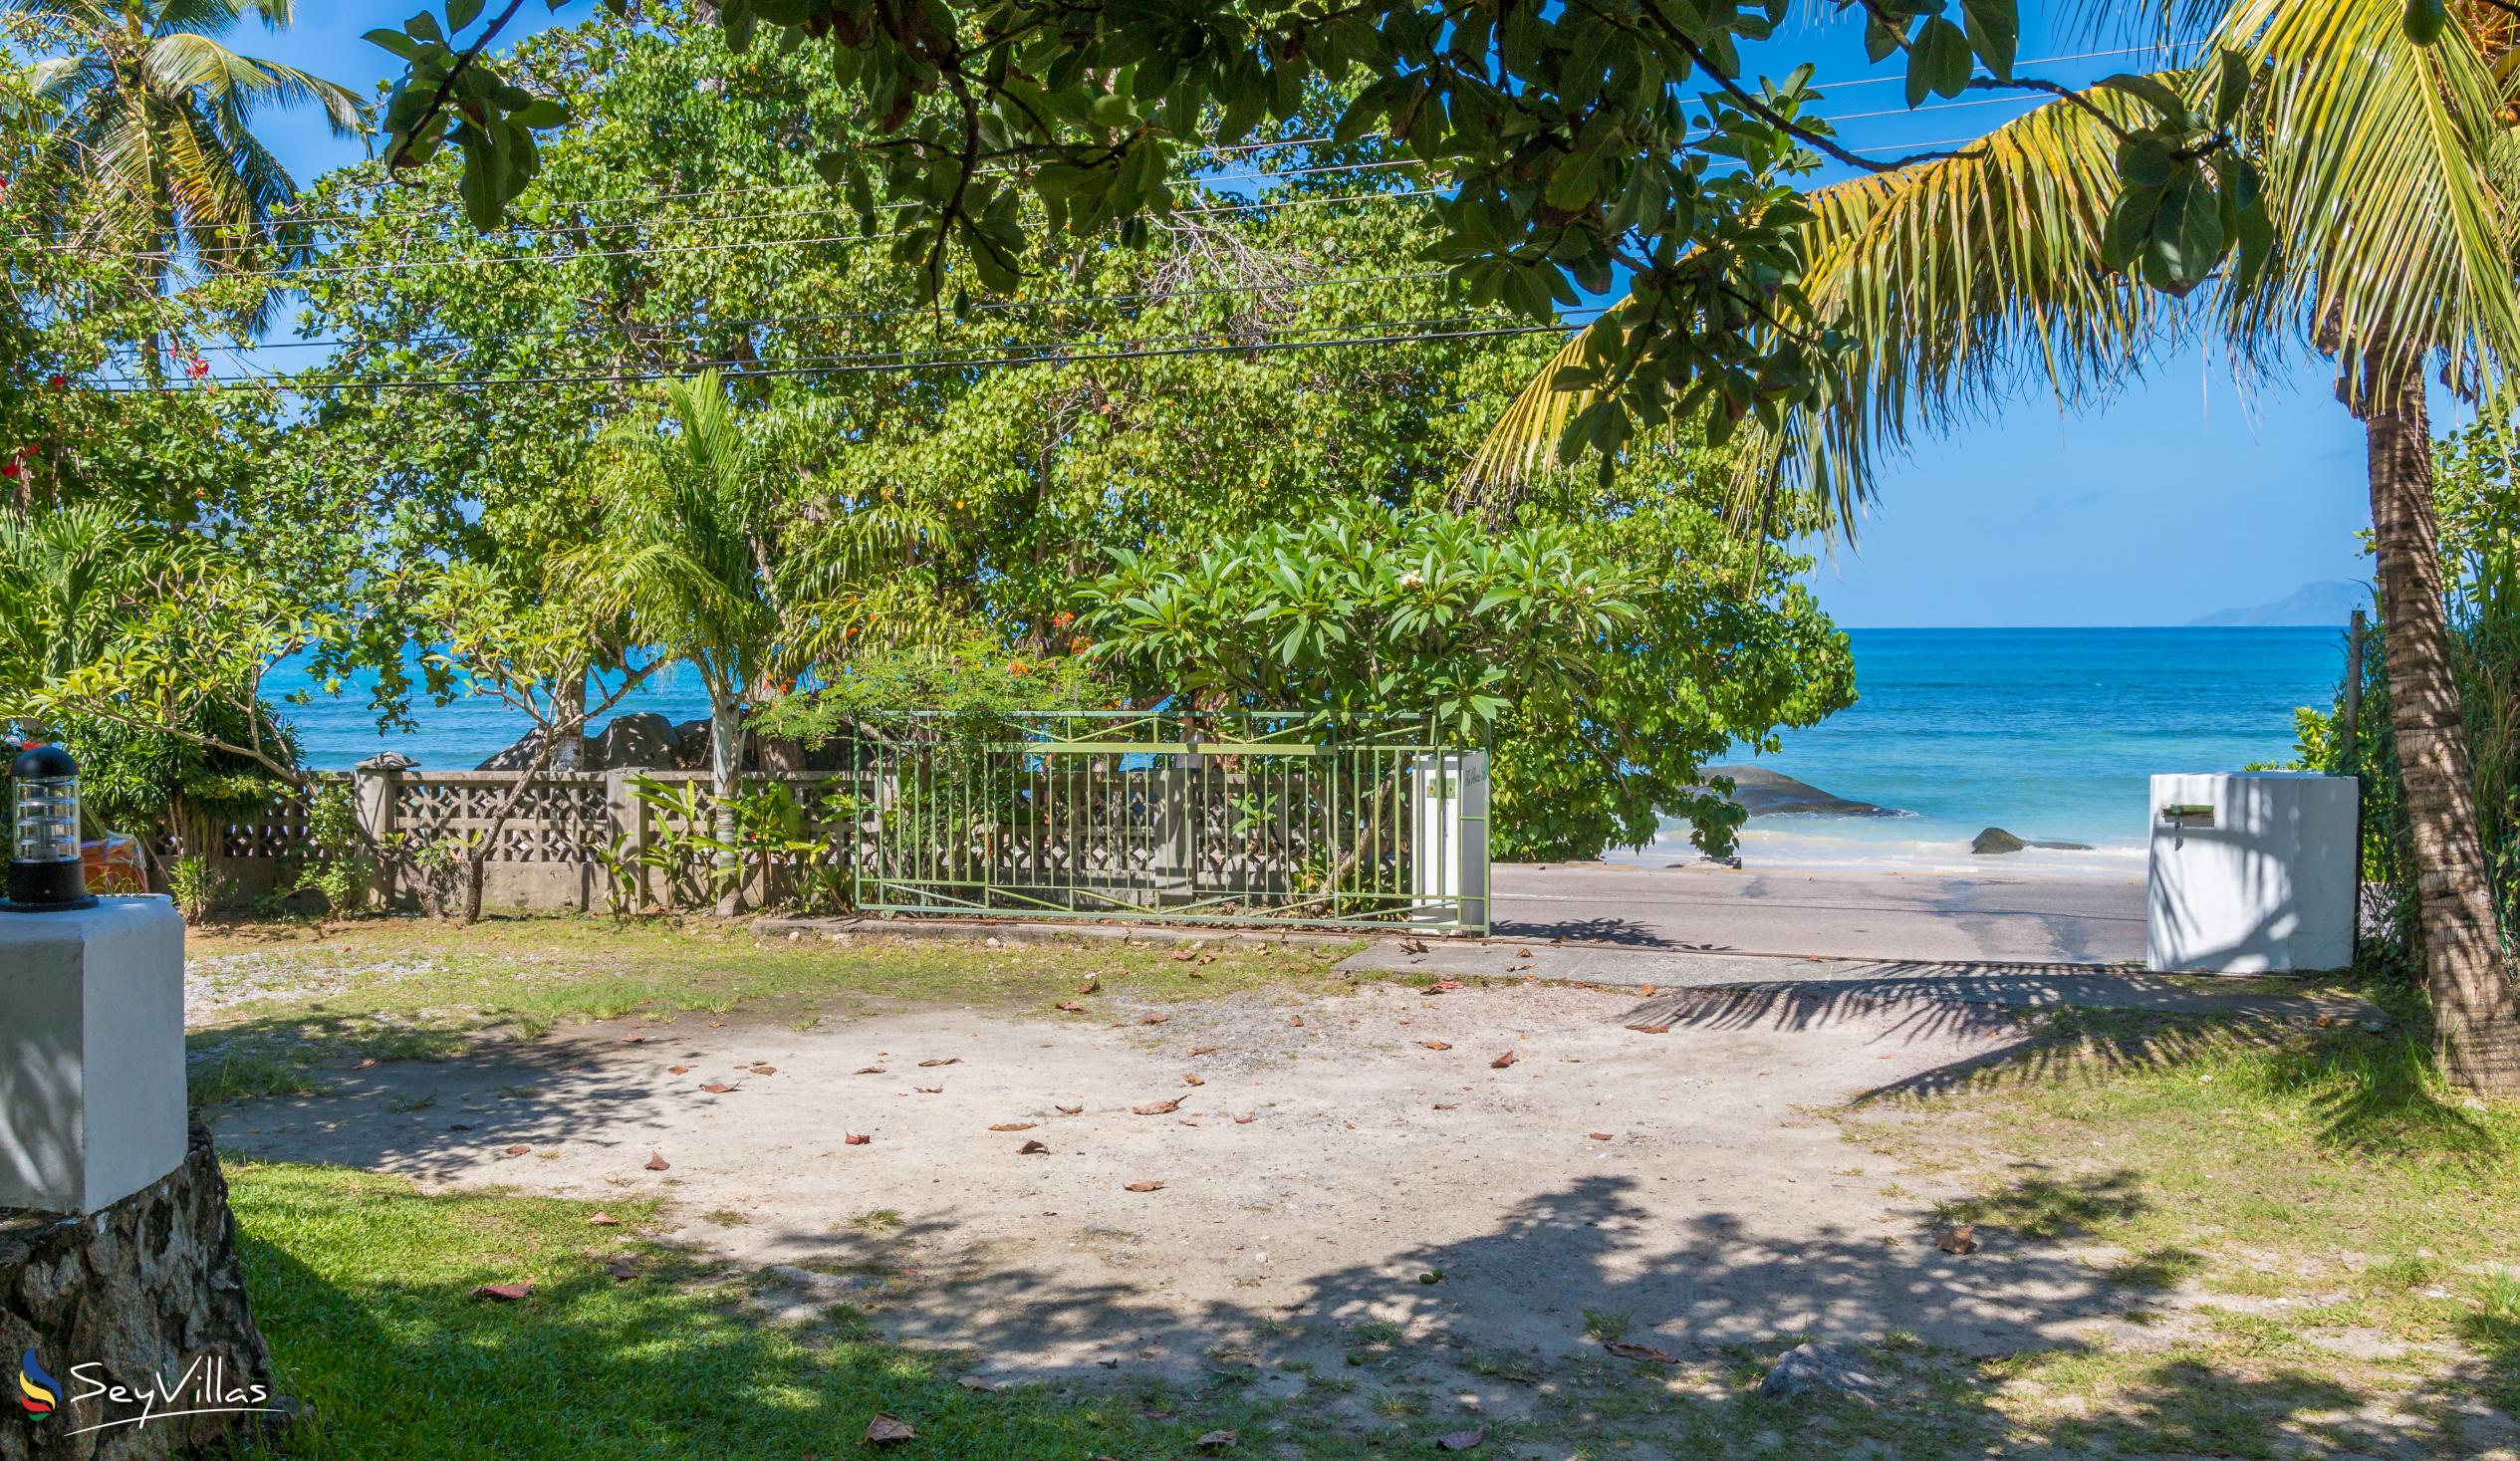 Foto 20: The Beach House - Aussenbereich - Mahé (Seychellen)